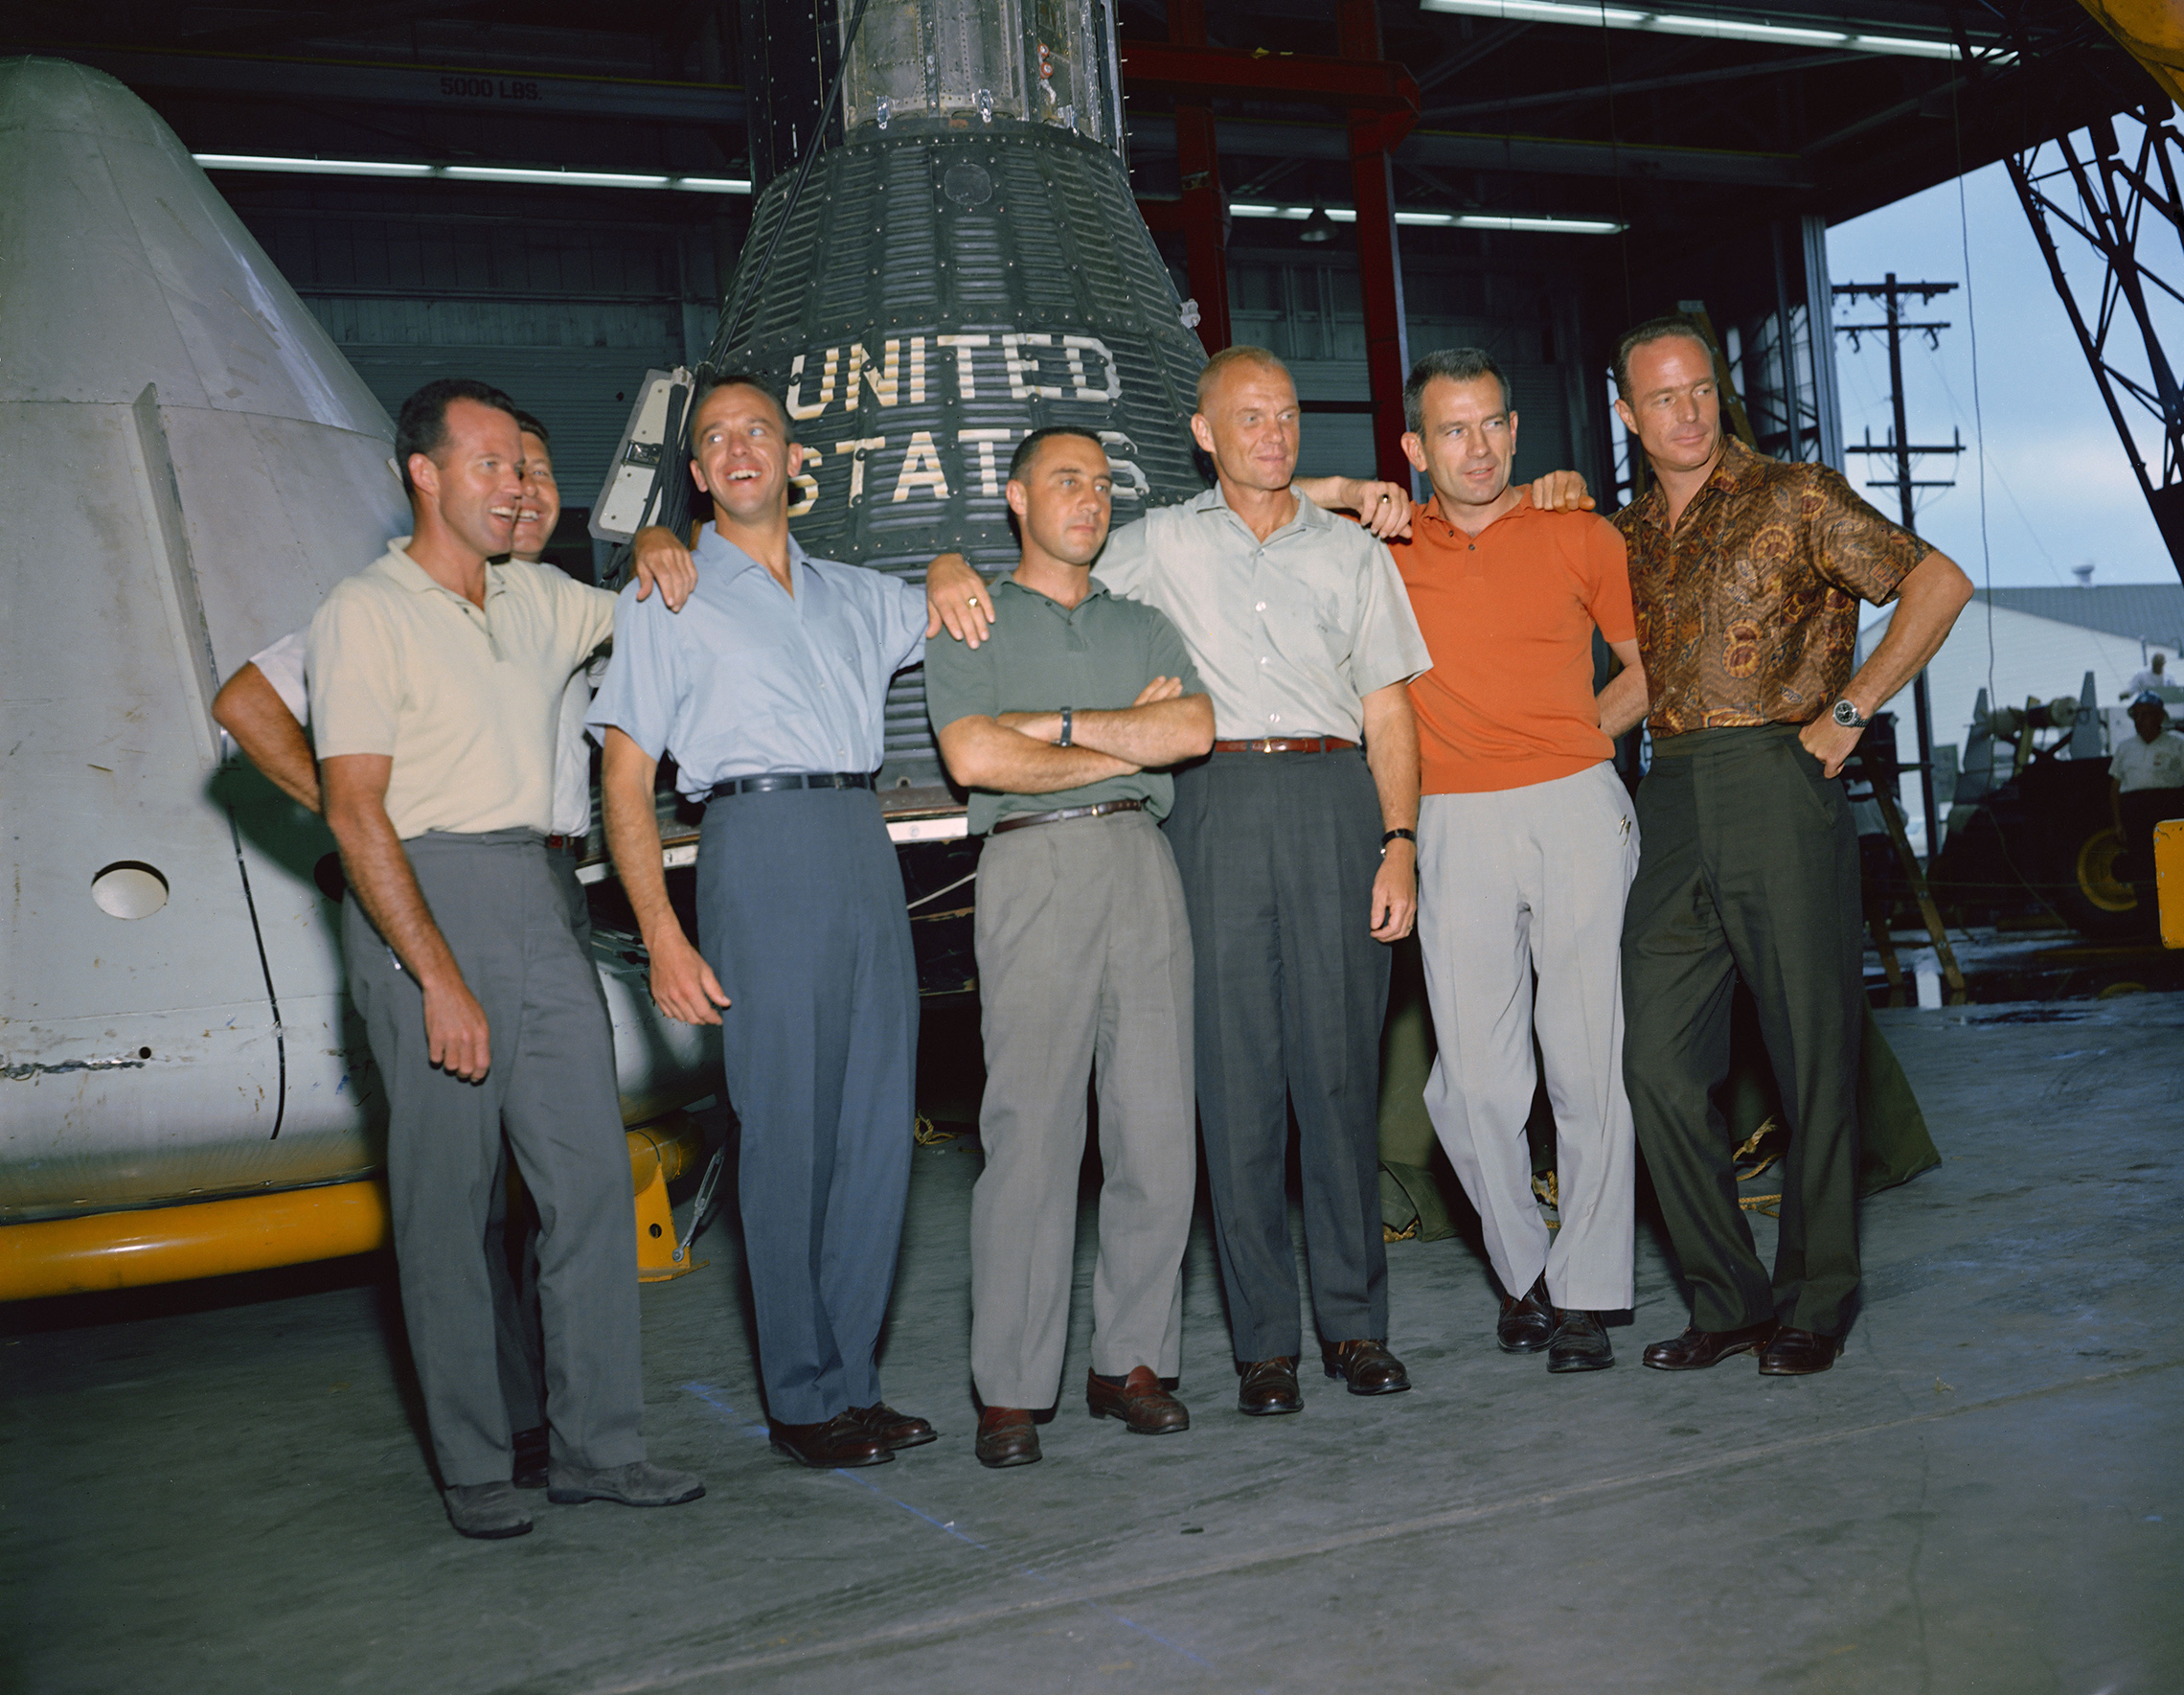 la 9 aprilie 1959, primul administrator al NASA, Dr. Keith Glennan, a anunțat numele primului grup de astronauți al agenției la o conferință de presă la Washington, D. C. acum cunoscut sub numele de șapte originale, au inclus trei aviatori Navali, M. Scott Carpenter, Walter M. Schirra Jr. și Alan B. Shepard Jr.; trei piloți ai Forțelor Aeriene, L. Gordon Cooper Jr., Virgil I. (Gus) Grissom și Donald K. (Deke) Slayton; împreună cu aviatorul Marine Corps John H. Glenn Jr. această fotografie de grup a astronauților originali Mercury a fost făcută în iunie 1963 la Centrul de nave spațiale cu echipaj (MSC), acum Johnson Space Center, în Houston, Texas. Astronauții sunt, de la stânga la dreapta: Cooper, Schirra, Shepard, Grissom, Glenn, Slayton și Carpenter. Proiectul Mercury a devenit prima întreprindere majoră a NASA. Obiectivele programului au fost plasarea unei nave spațiale cu rating uman pe orbită în jurul Pământului, observarea performanței astronauților în astfel de condiții și recuperarea în siguranță a astronautului și a navei spațiale. Zborurile Mercury au dovedit că oamenii pot trăi și lucra în spațiu și au deschis calea pentru programele Gemeni și Apollo, precum și pentru toate zborurile spațiale umane ulterioare. (NASA)'s first administrator, Dr. Keith Glennan, announced the names of the agency's first group of astronauts at a news conference in Washington, D.C. Now known as the "Original Seven," they included three Naval aviators, M. Scott Carpenter, Walter M. Schirra Jr., and Alan B. Shepard Jr.; three Air Force pilots, L. Gordon Cooper Jr., Virgil I. (Gus) Grissom, and Donald K. (Deke) Slayton; along with Marine Corps aviator John H. Glenn Jr. This group photo of the original Mercury astronauts was taken in June 1963 at the Manned Spacecraft Center (MSC), now Johnson Space Center, in Houston, Texas. The astronauts are, left to right: Cooper, Schirra, Shepard, Grissom, Glenn, Slayton and Carpenter. Project Mercury became NASA's first major undertaking. The objectives of the program were to place a human-rated spacecraft into orbit around Earth, observe the astronauts' performance in such conditions and safely recover the astronaut and the spacecraft. The Mercury flights proved that humans could live and work in space, and paved the way for the Gemini and Apollo programs as well as for all further human spaceflight. (NASA)